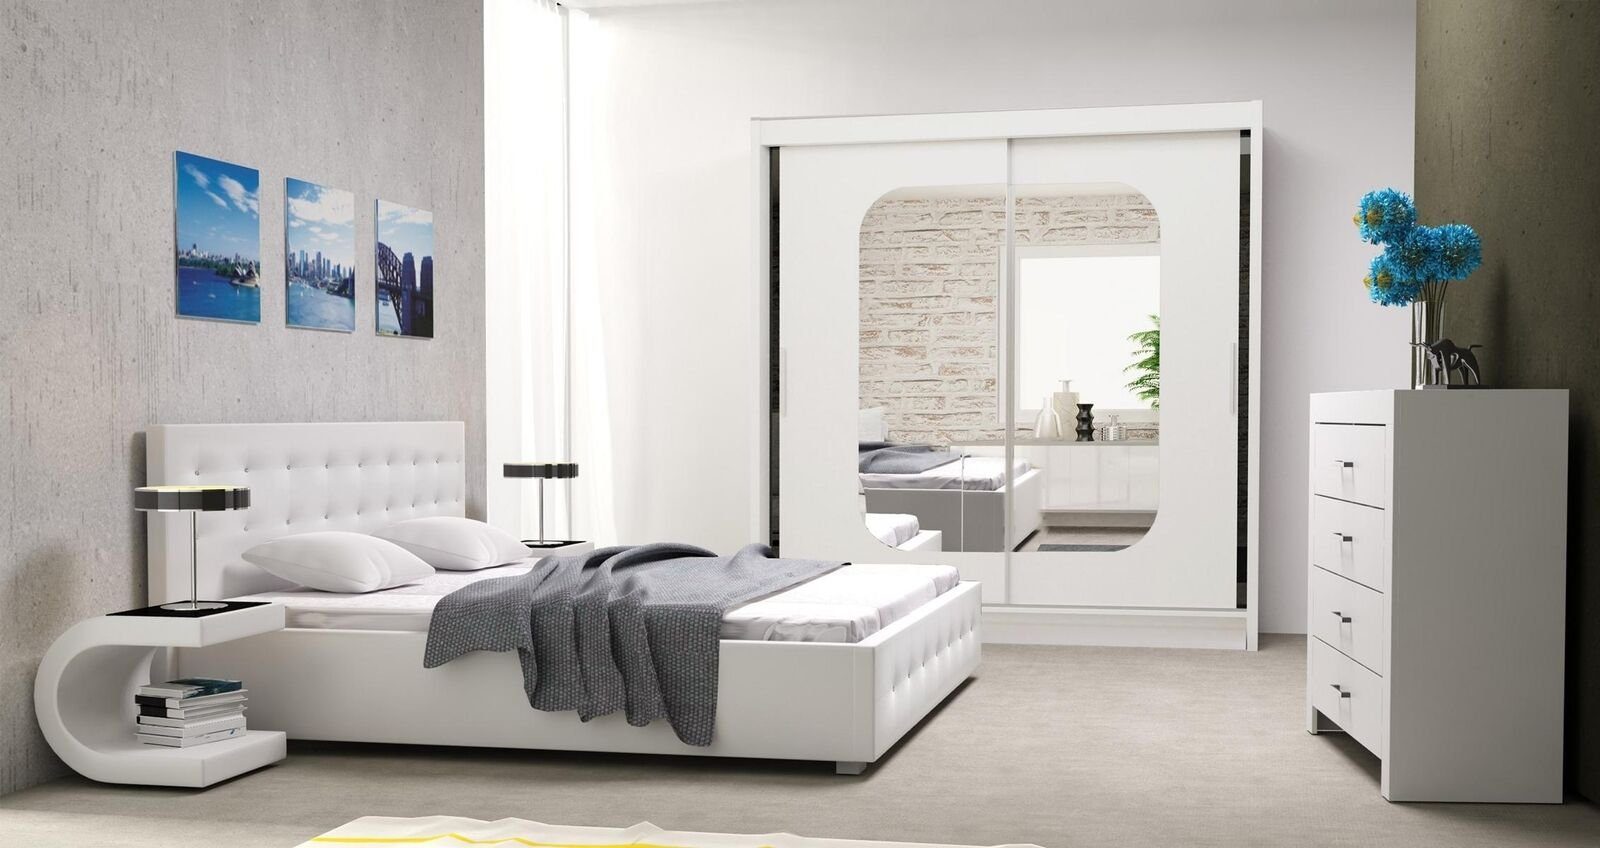 JVmoebel Bett, Bett Polster Betten Design Weiß Luxus 160x200cm Doppel